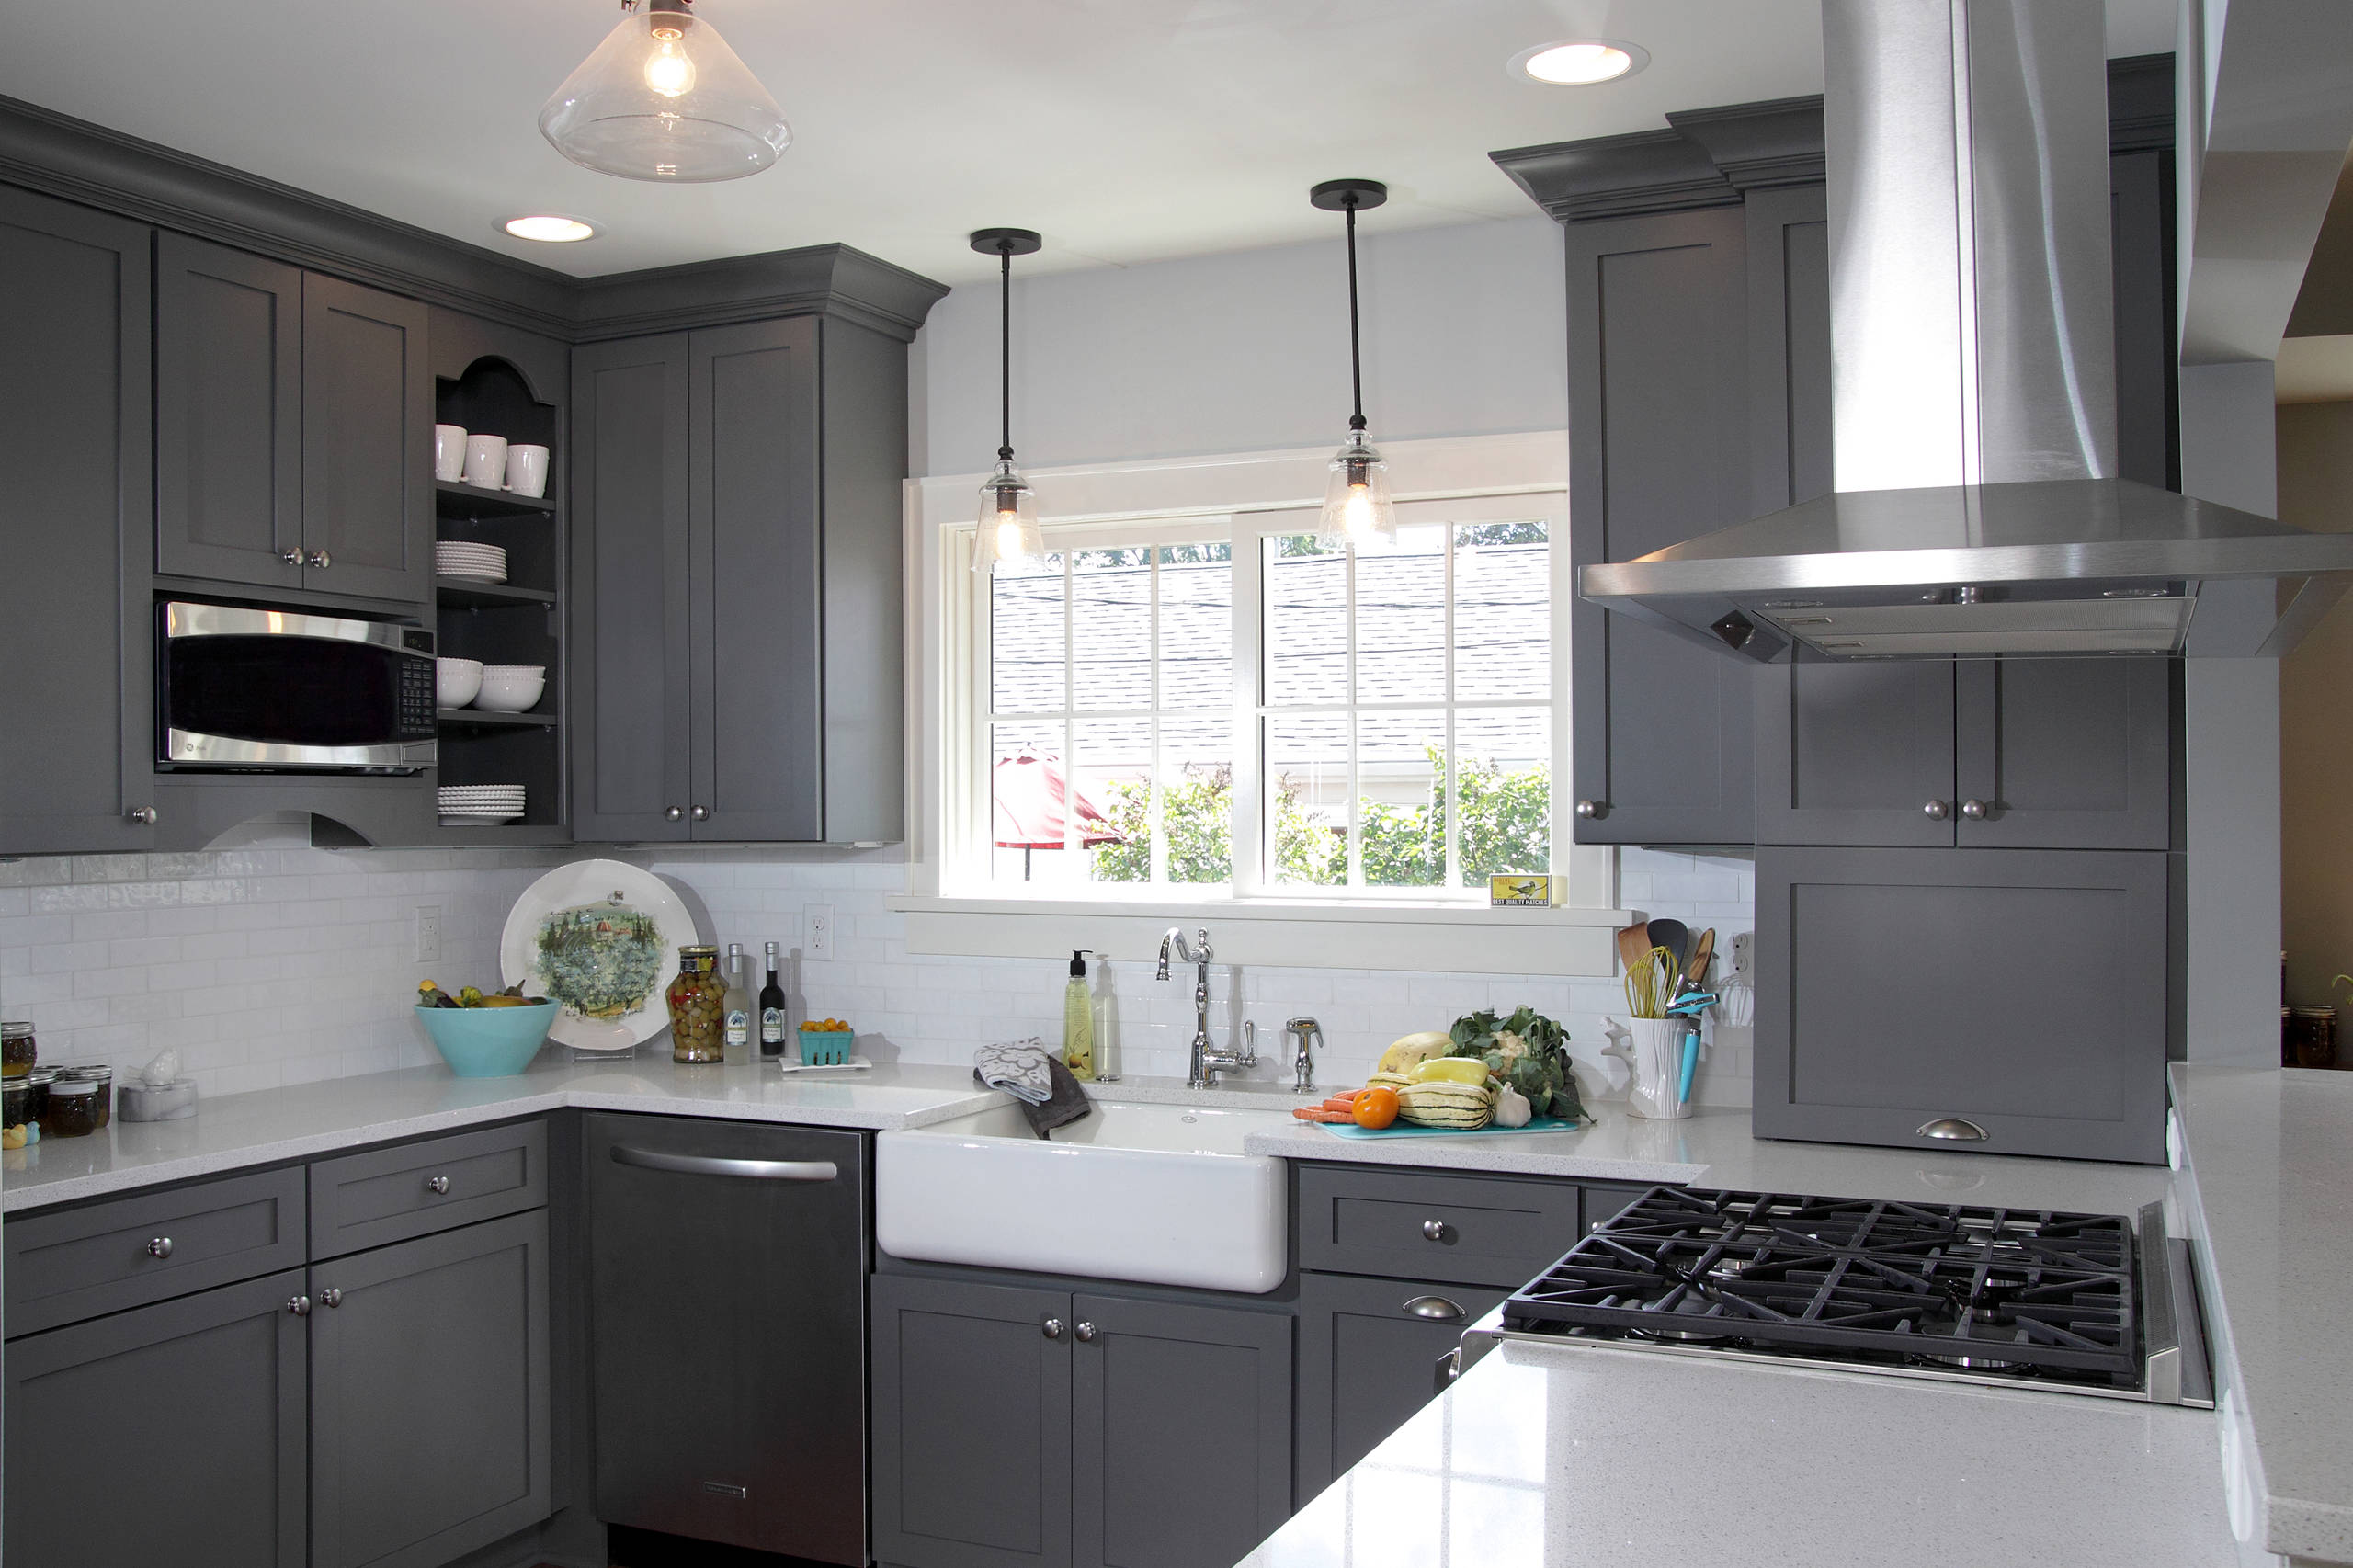 Amazing Kitchen Designs – Check 18 Inspiring Grey Kitchen Ideas